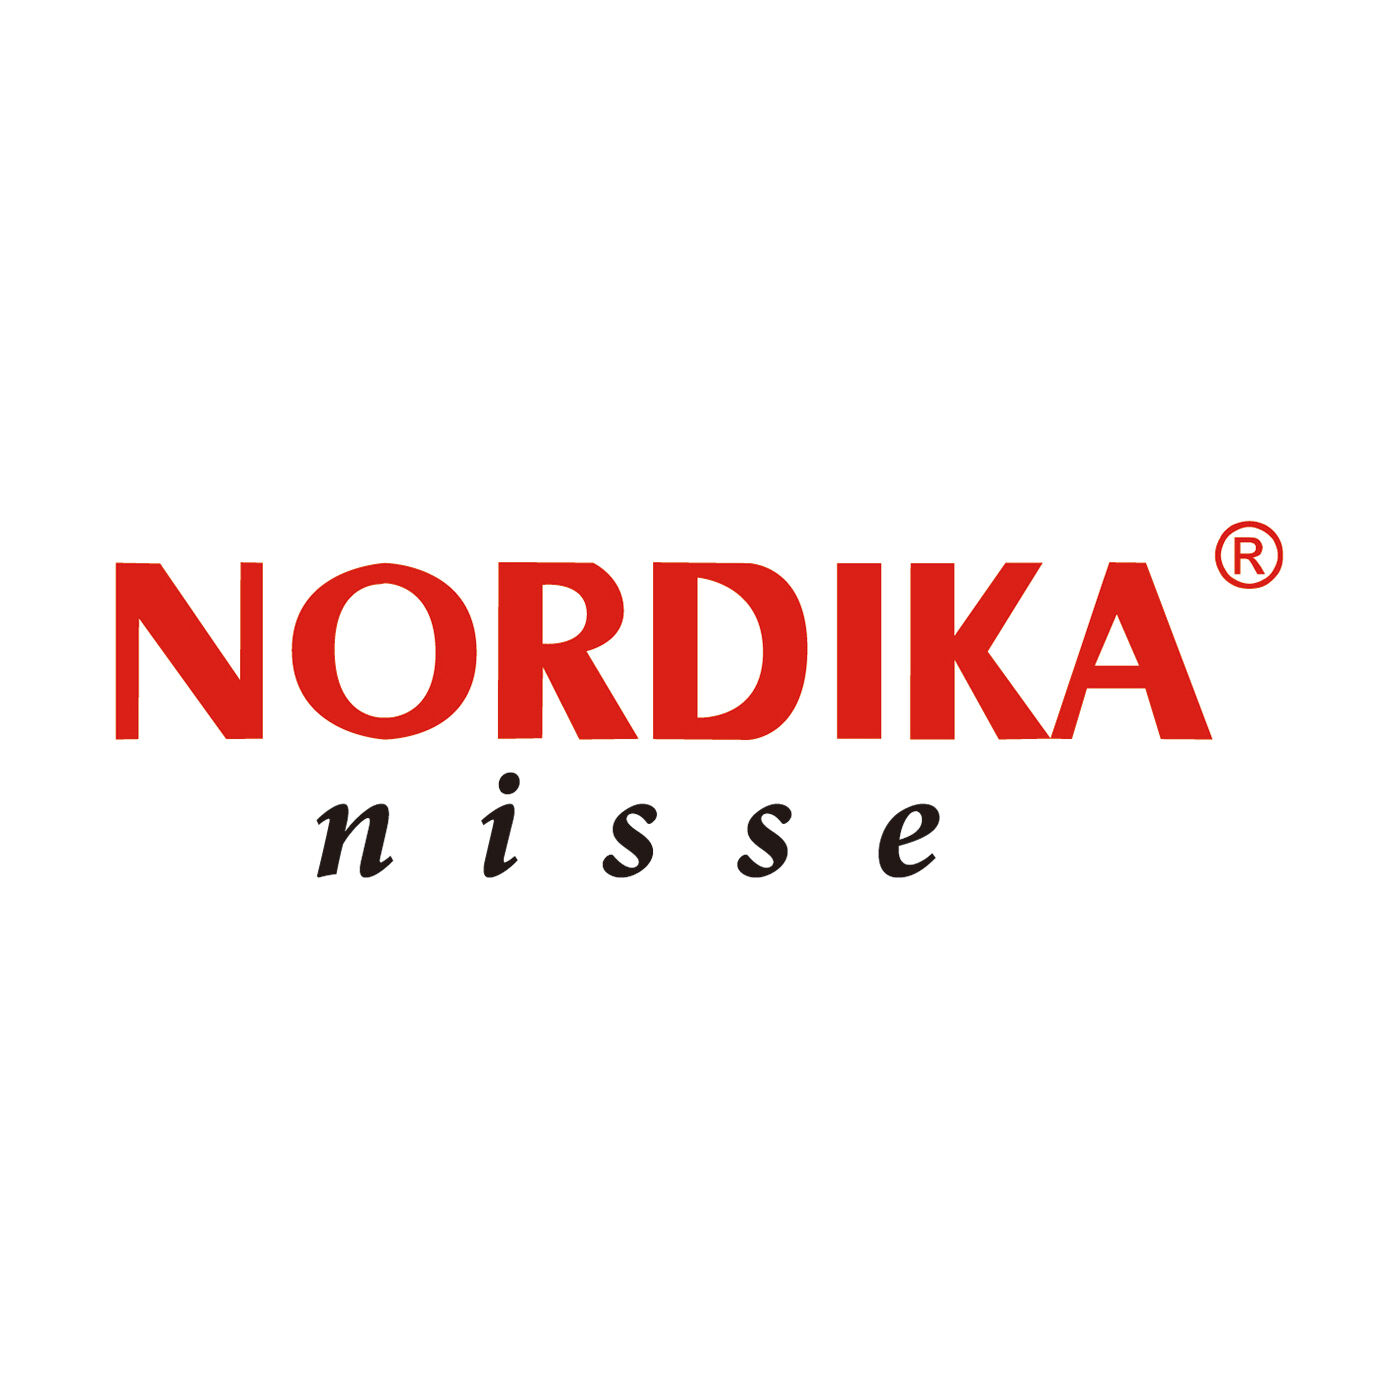 SeeMONO|ヨーロッパの職人が手作りした北欧の妖精〈白羊　中〉／ノルディカニッセ|NORDIKA nisse（ノルディカニッセ）は、Nordika Design（ノルディカデザイン社）が手掛けるハンドメイドの木製人形ブランドです。デンマークの妖精"ニッセ"をモチーフにした人形をつくり、世界に幸福を届けています。